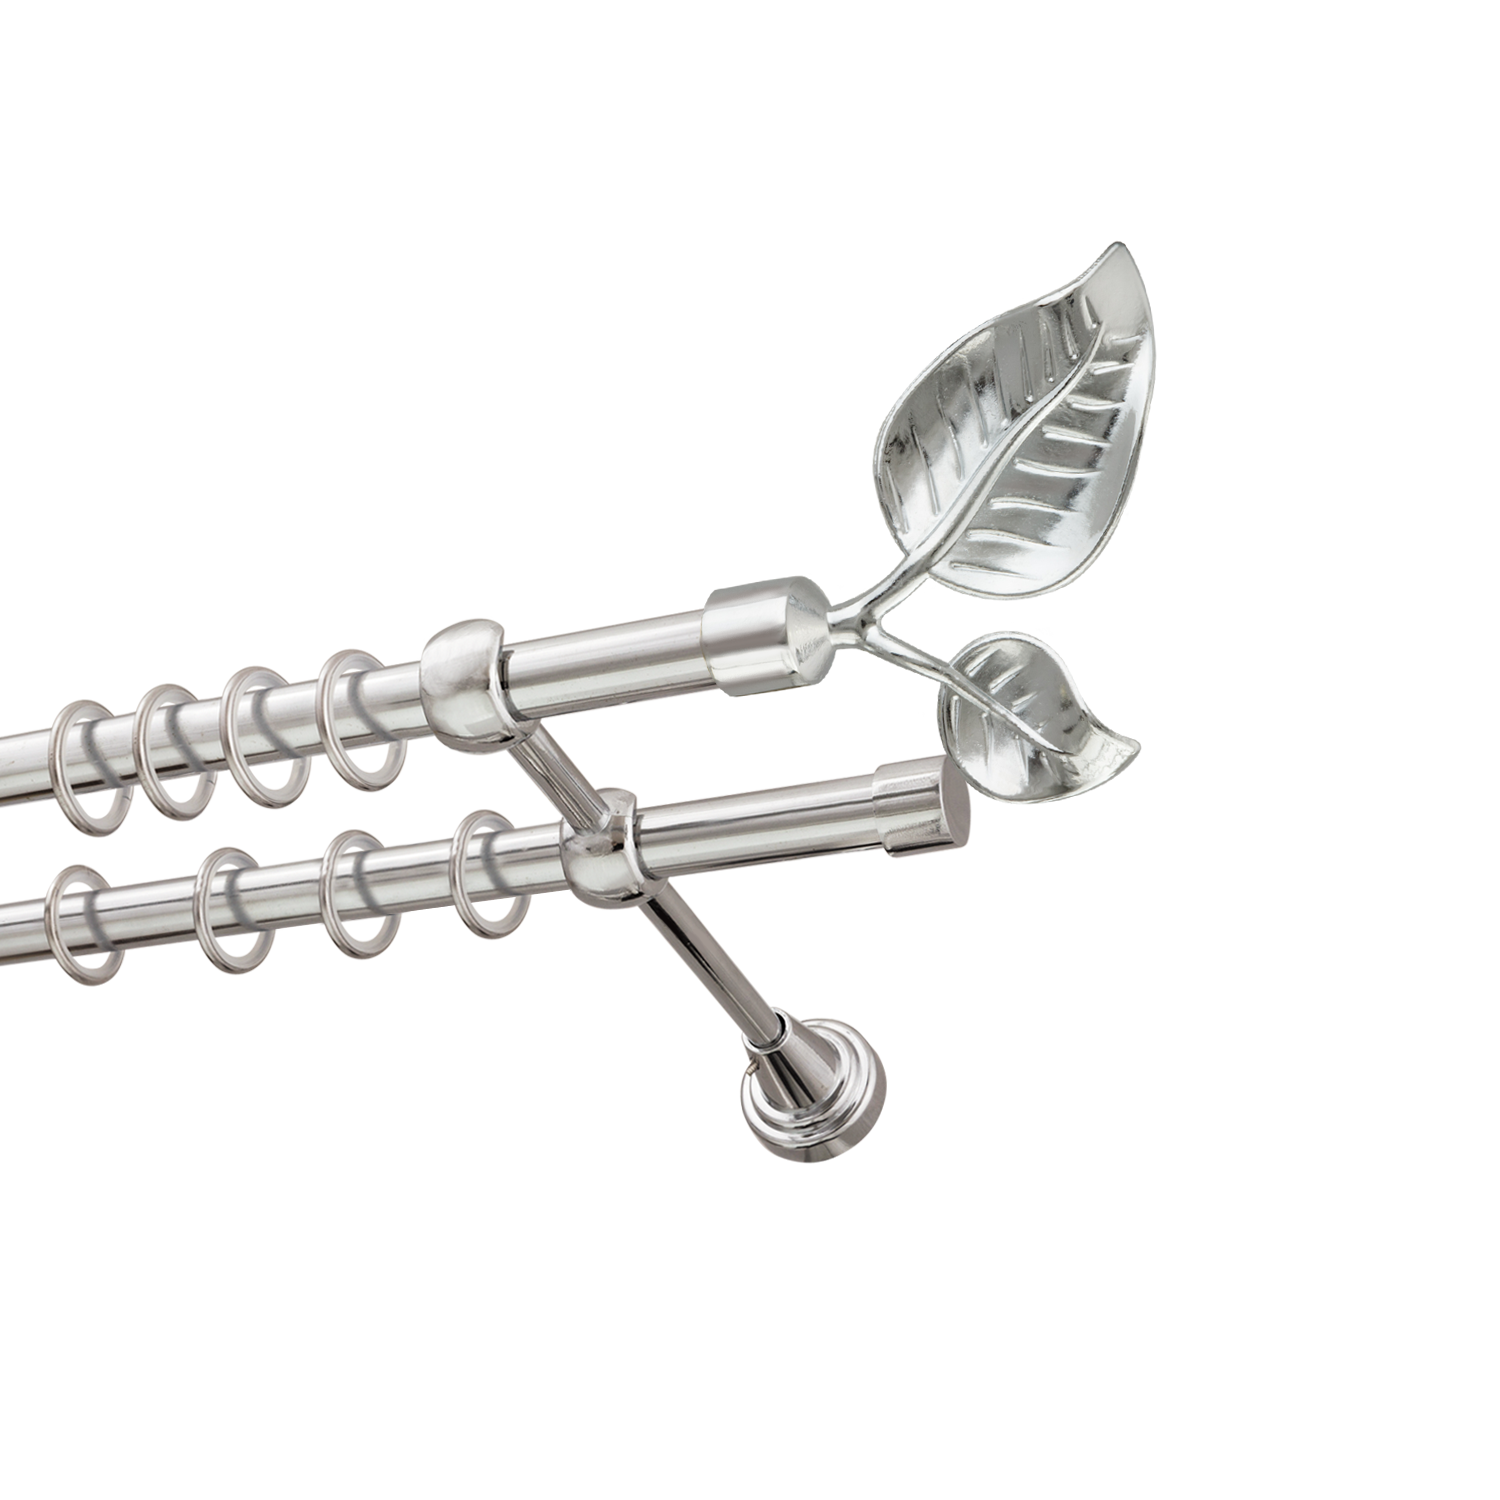 Металлический карниз для штор Тропик, двухрядный 16/16 мм, серебро, гладкая штанга, длина 240 см - фото Wikidecor.ru